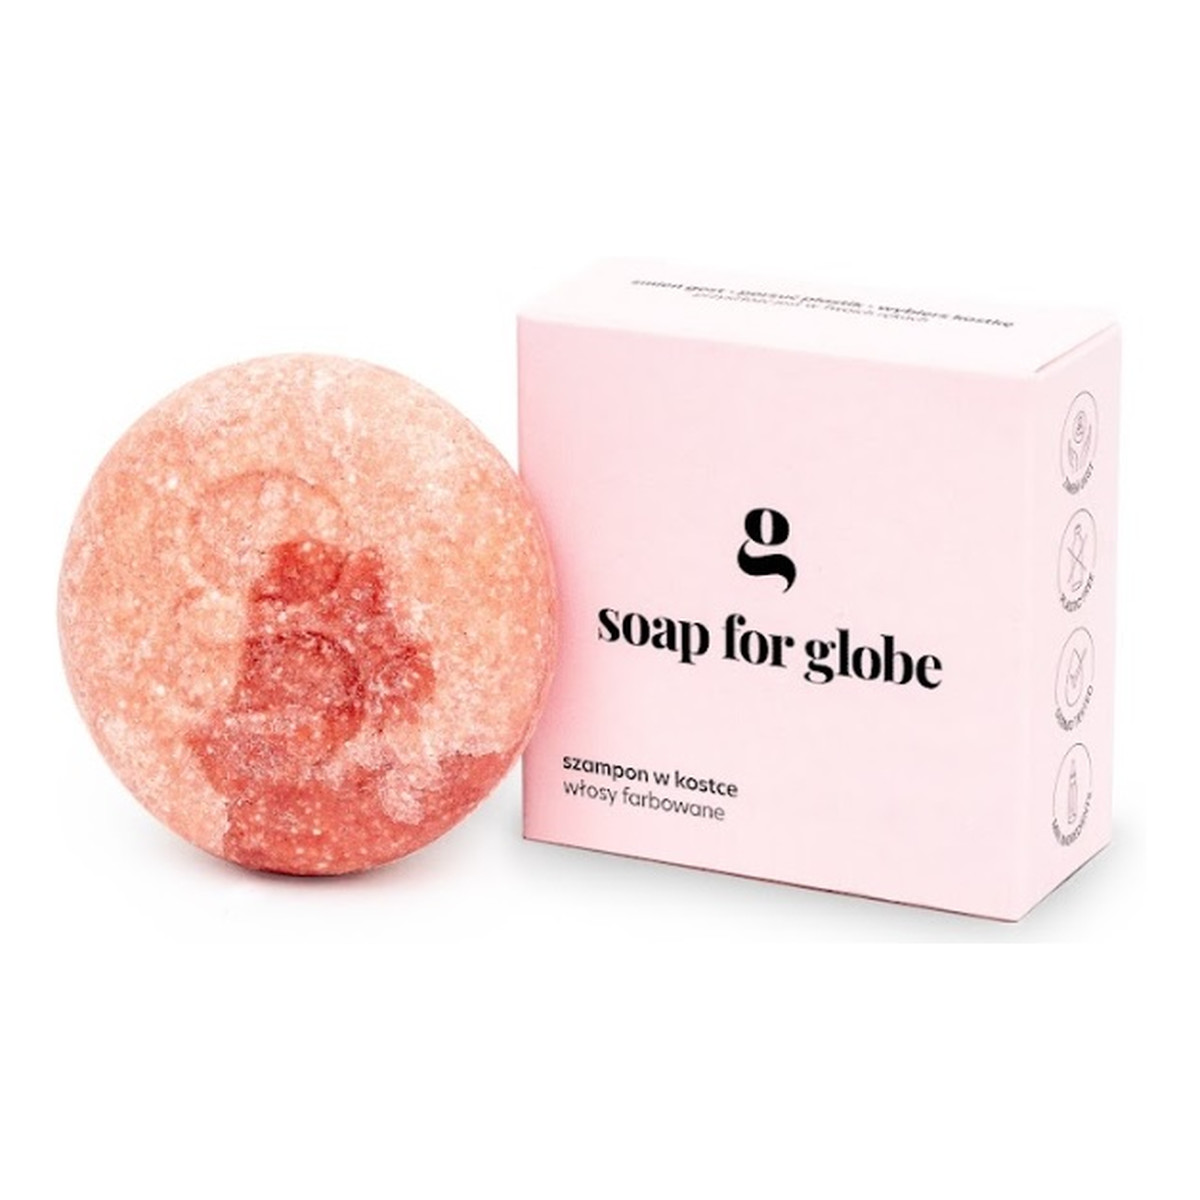 Soap for Globe Szampon do włosów farbowanych colour rich 80g 80g